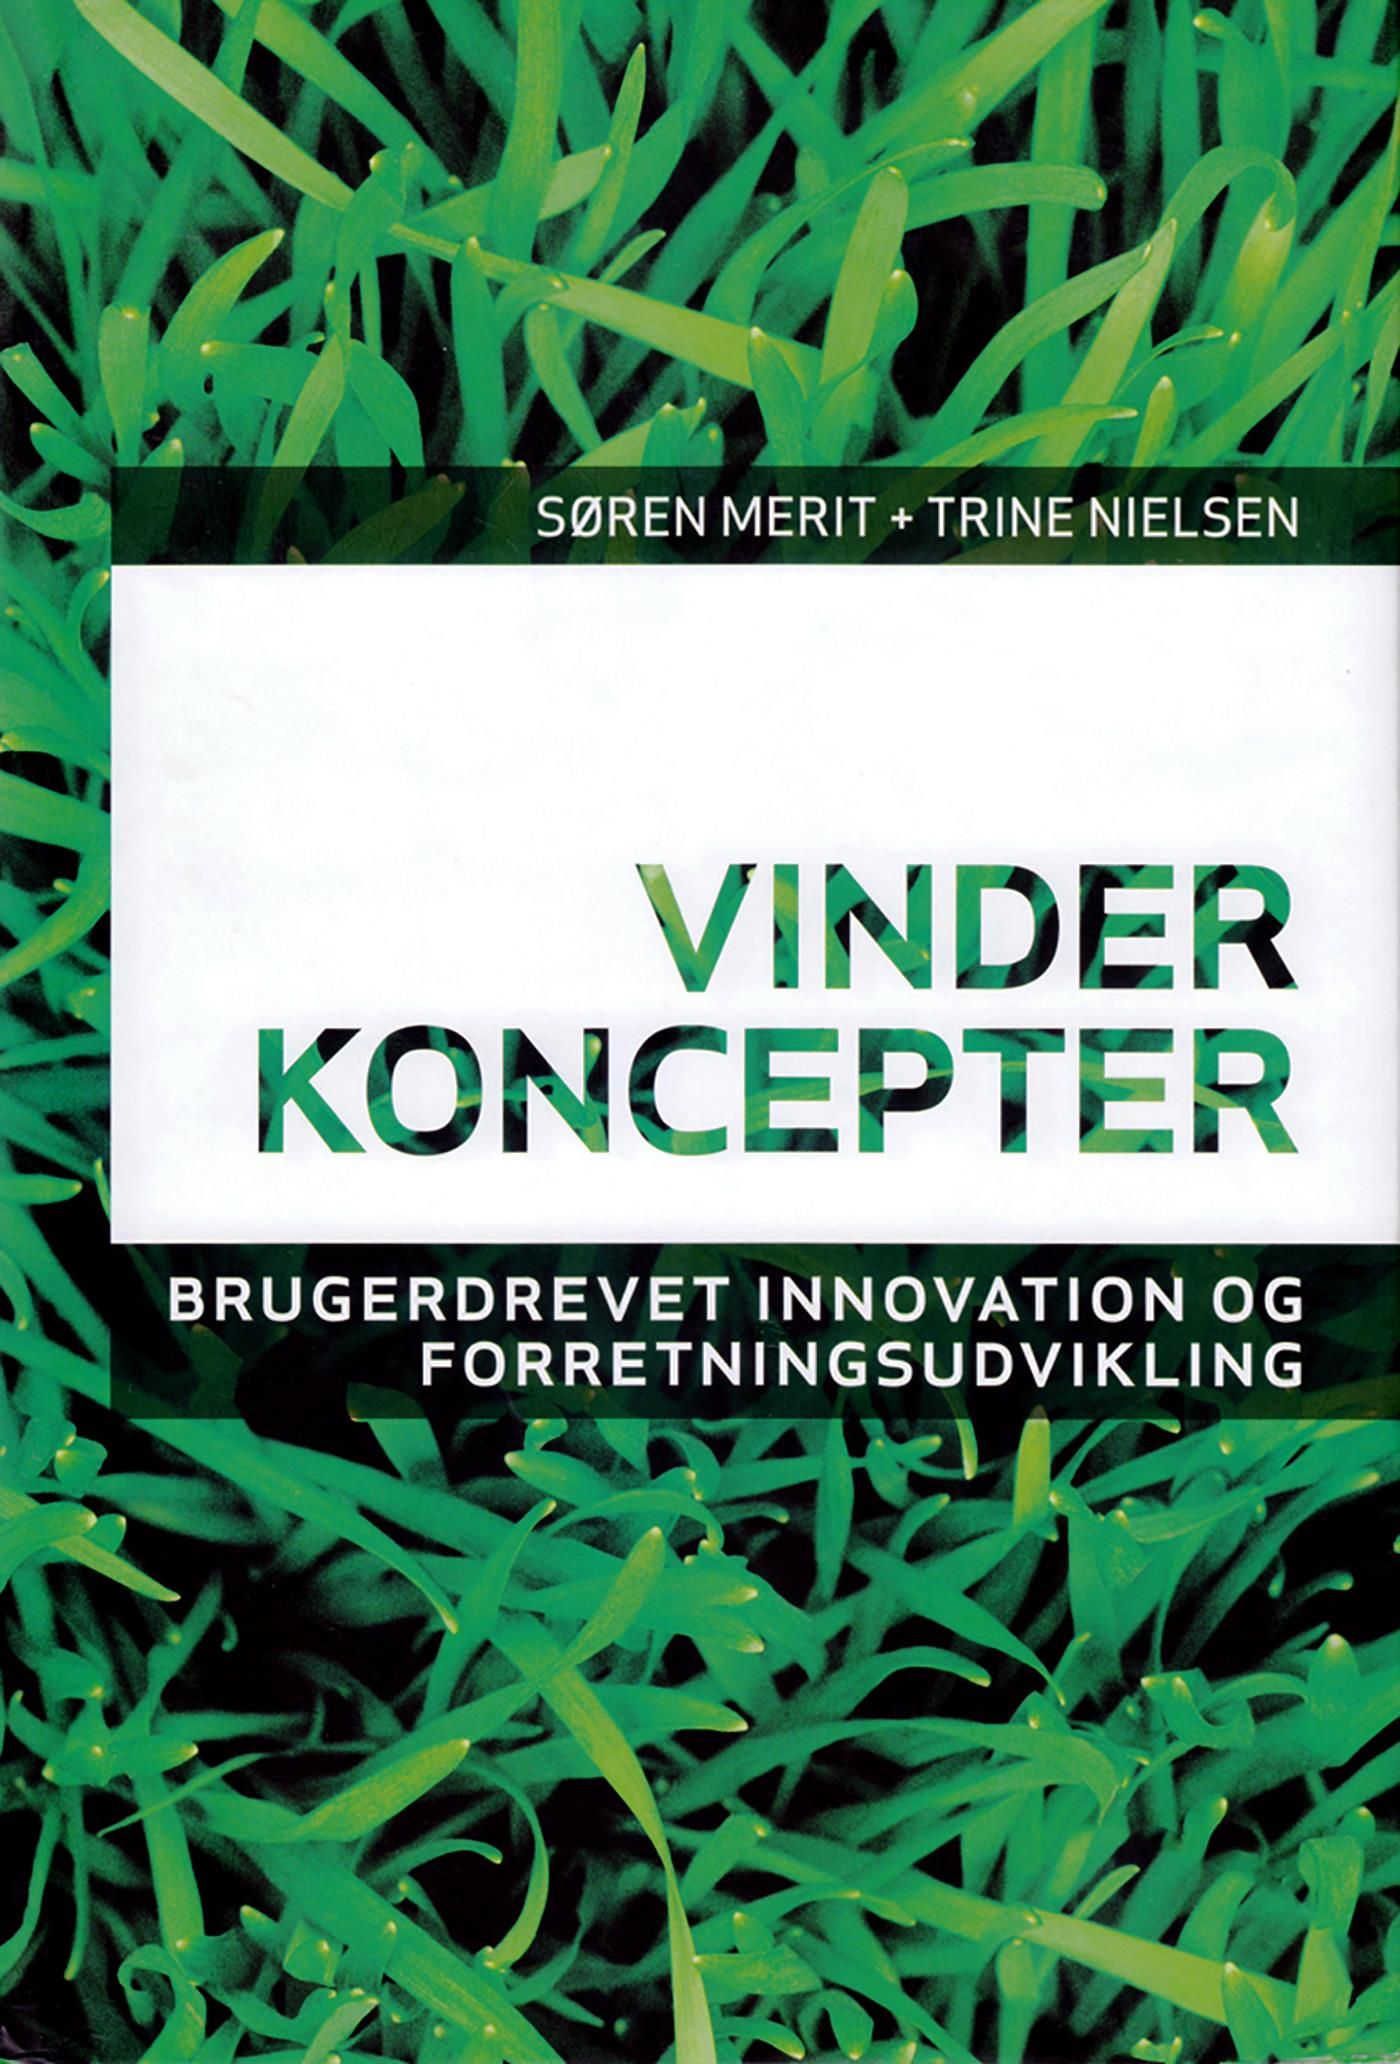 Vinderkoncepter, e-bog af Søren Merit, Trine Nielsen